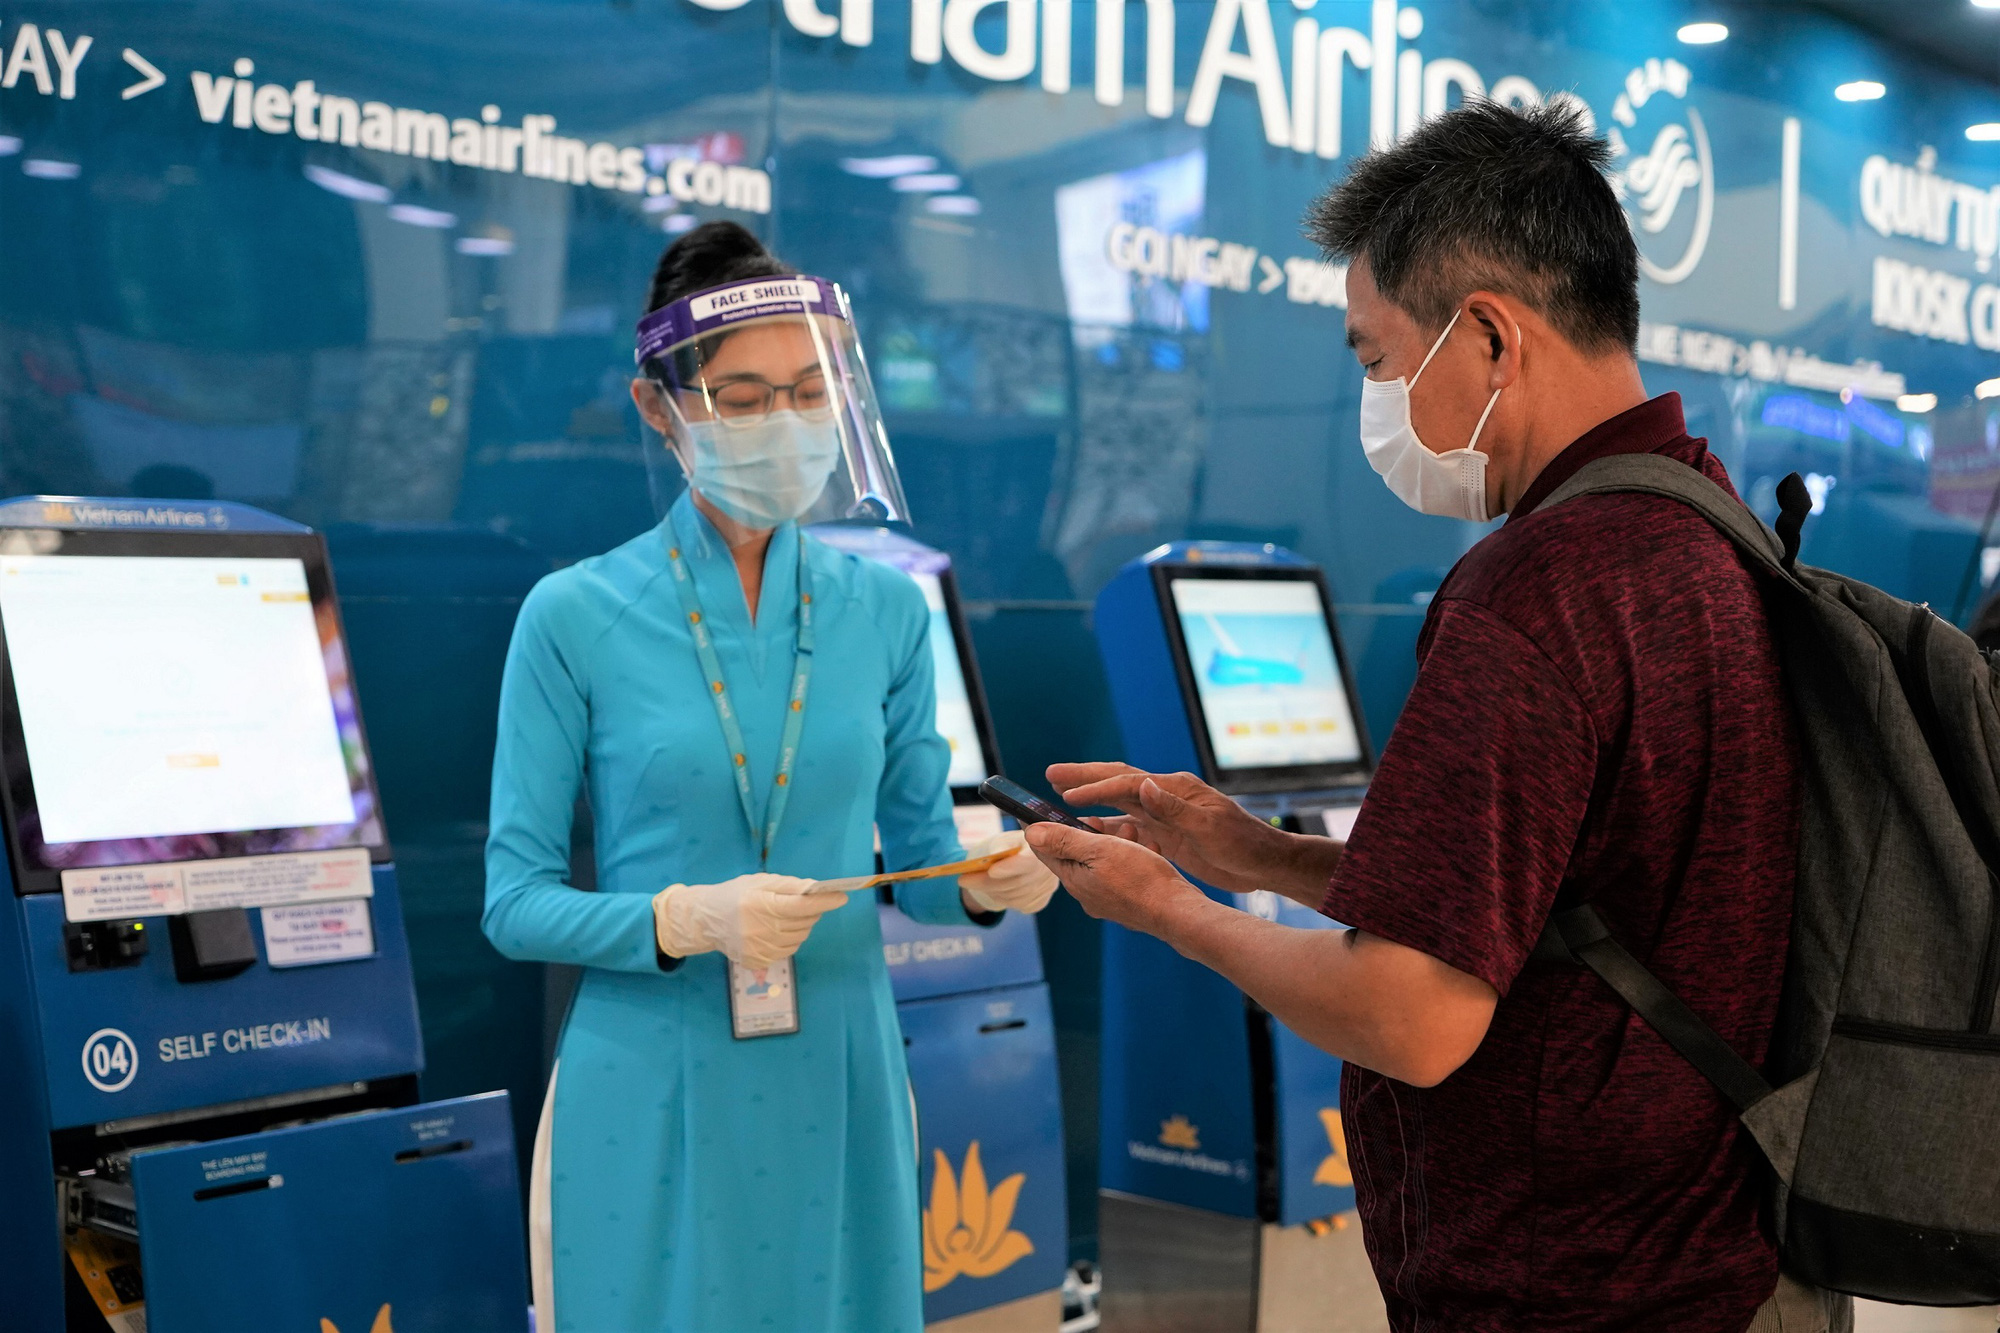 Vietnam Airlines vào Top 10 Thương hiệu có trải nghiệm khách hàng xuất sắc năm 2021 - Ảnh 1.